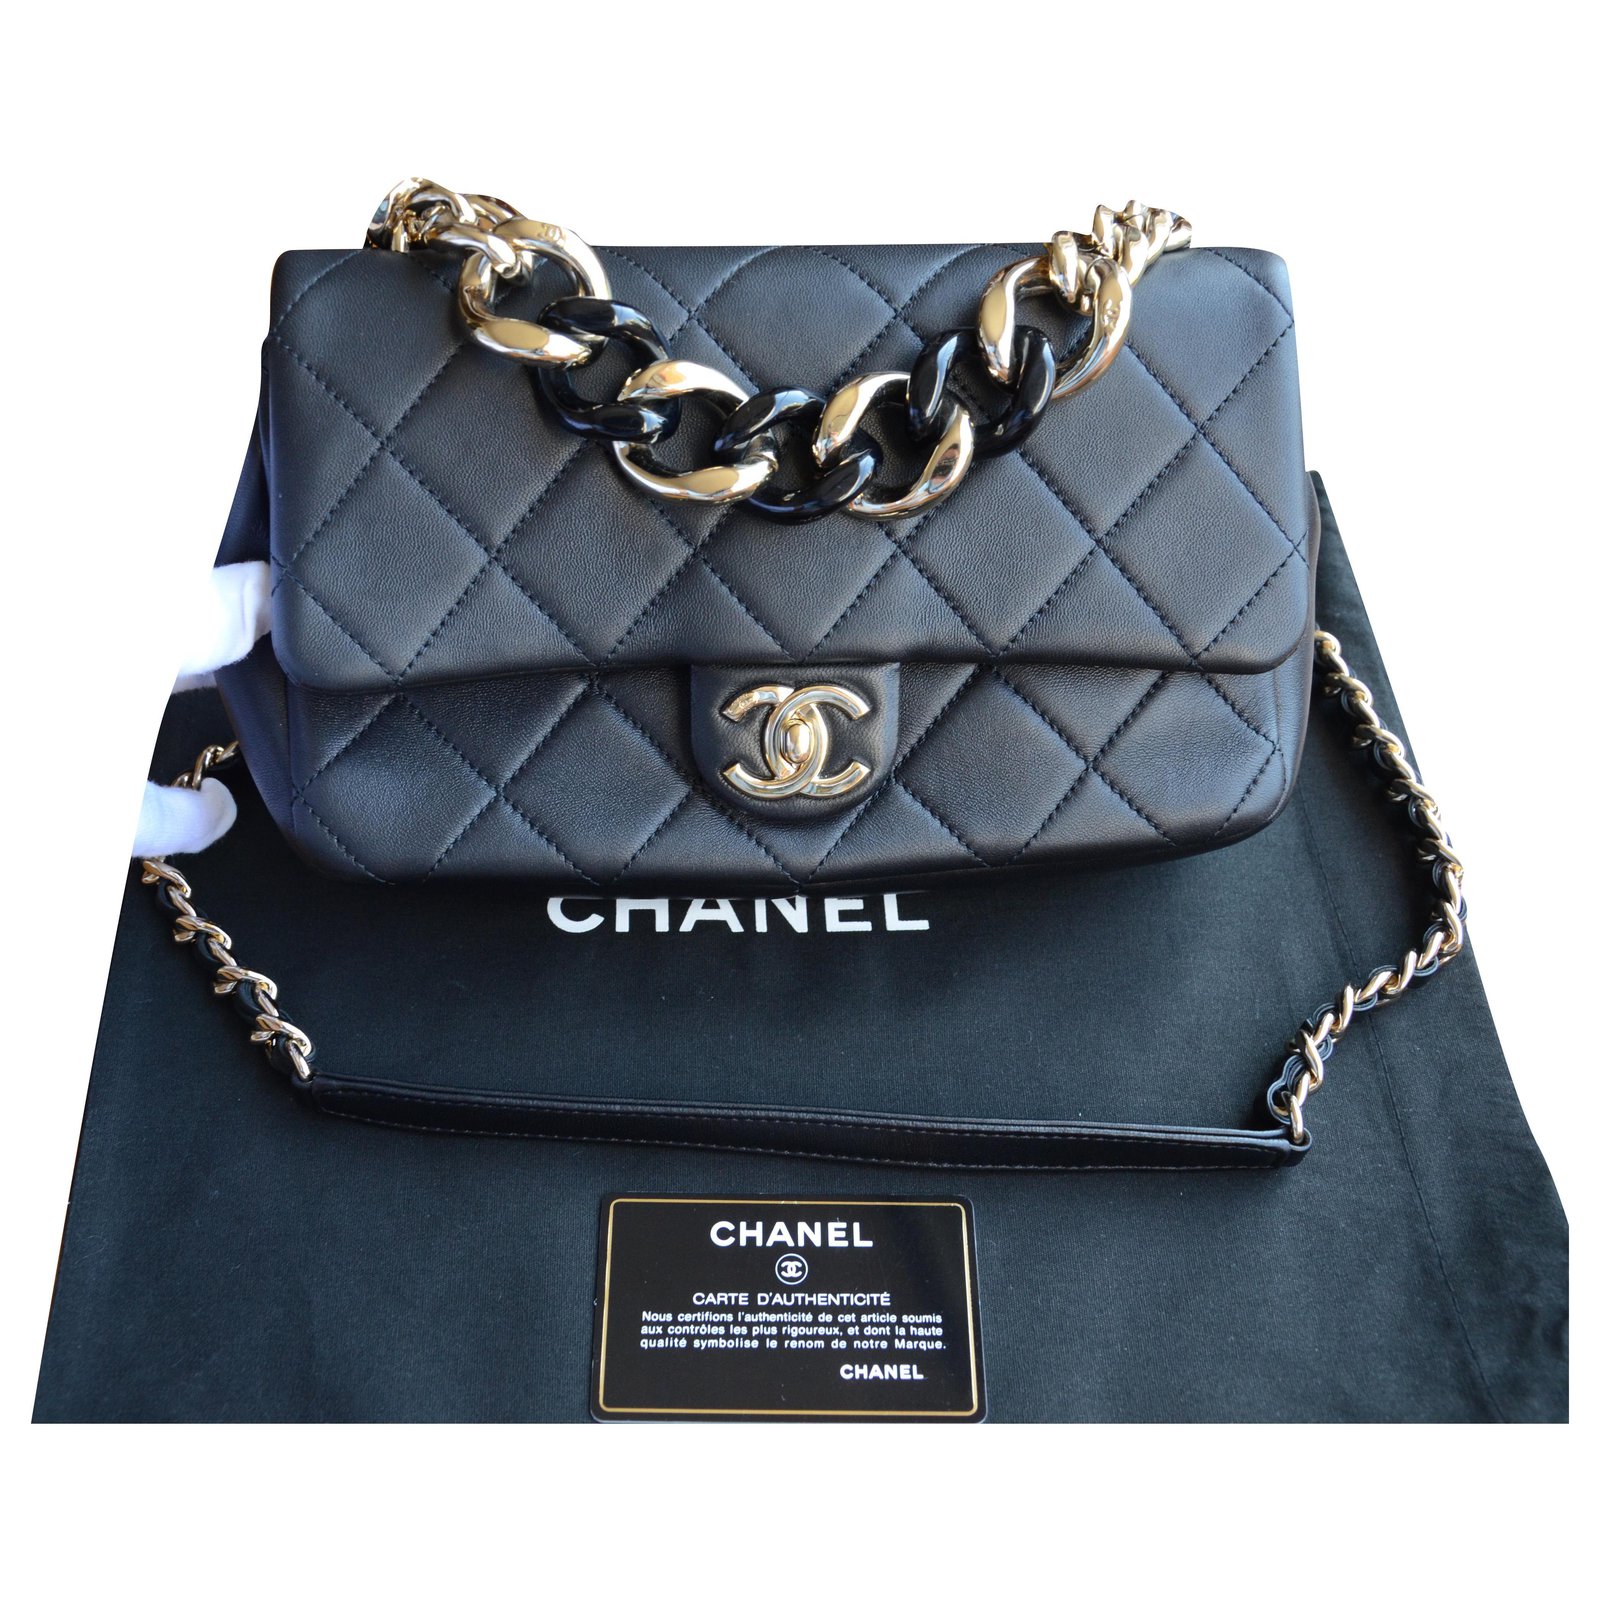 Chanel Cruise 2018 Seasonal Bag Collection  Bragmybag